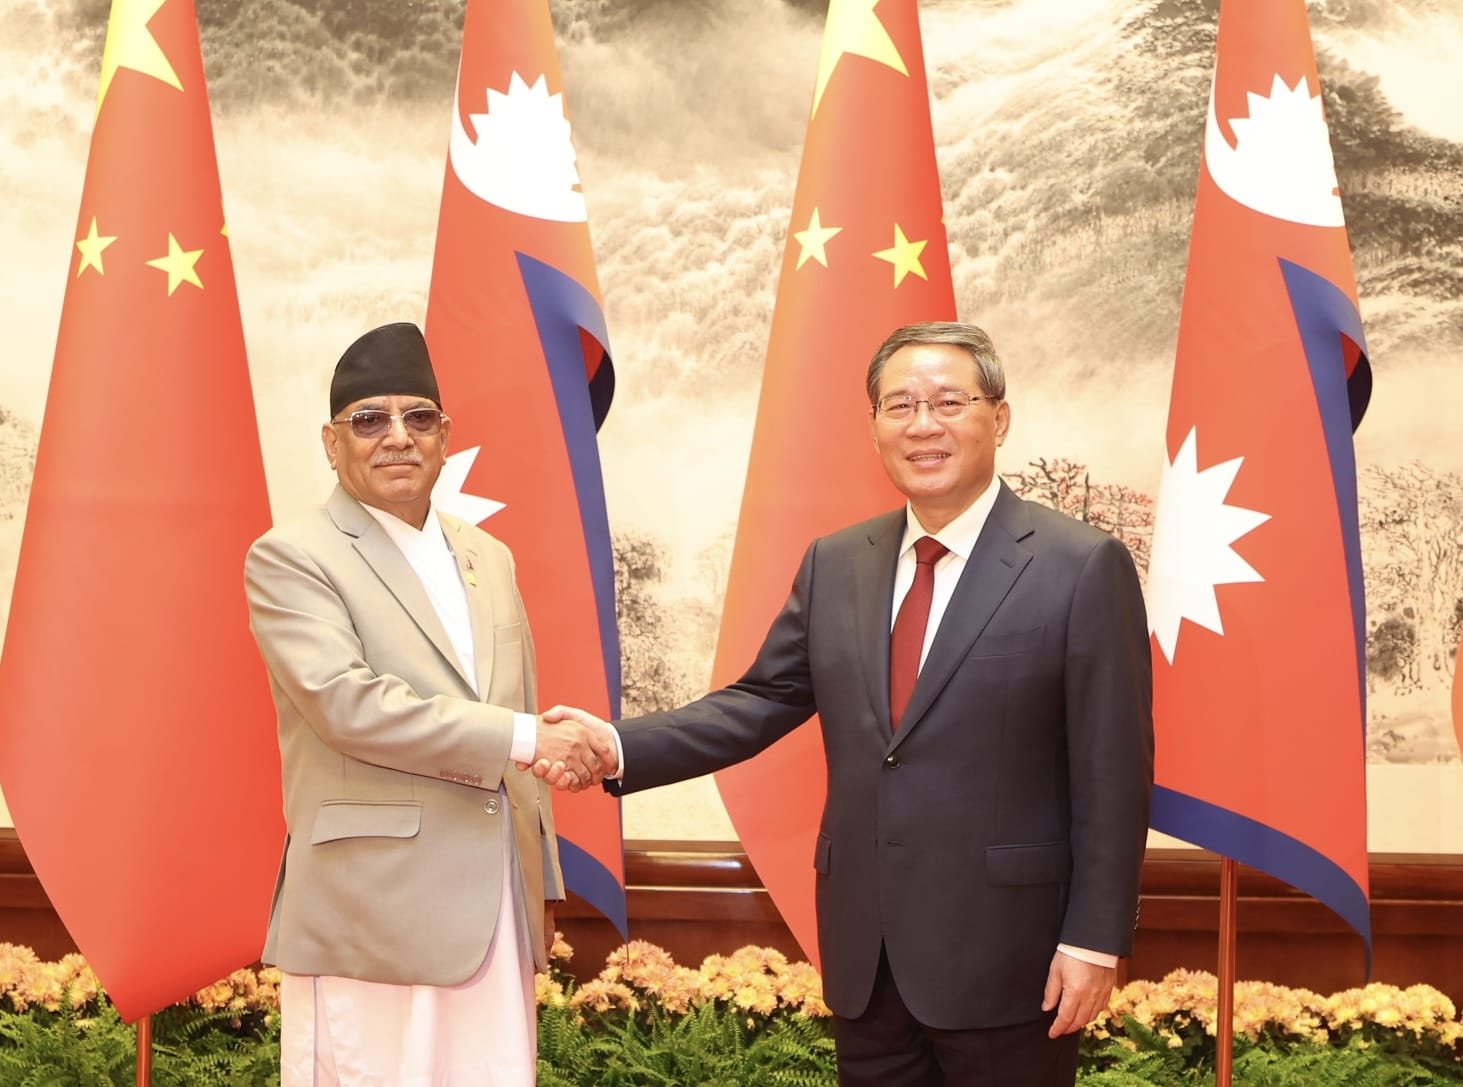 नेपाल-चीनबीचको सम्बन्धमा नयाँ ऊर्जा थपिएको छ : चिनियाँ प्रधानमन्त्री